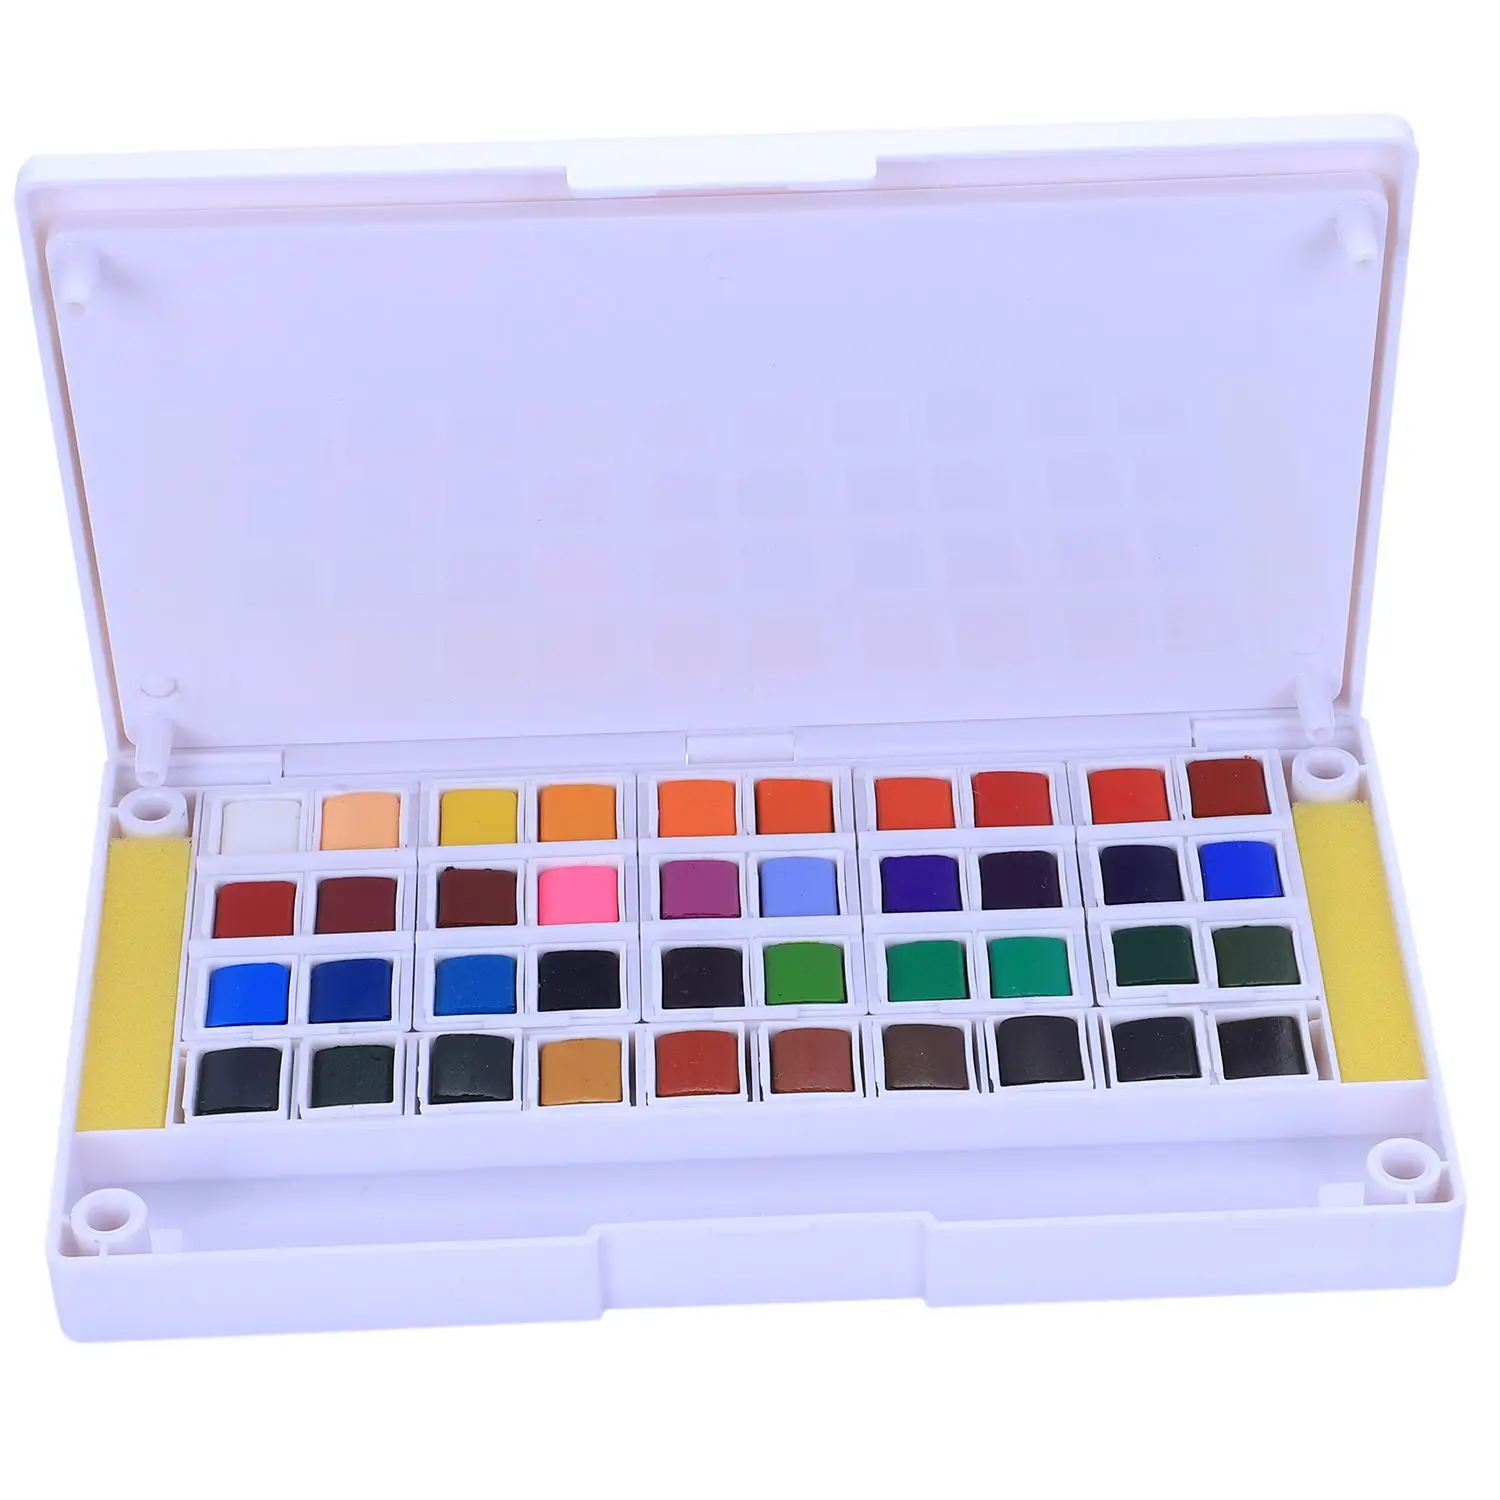 Превосходный пигмент Твердые акварельные краски s Набор цветных карандашей для рисования краски акварельные товары для рукоделия - Цвет: 40 colors